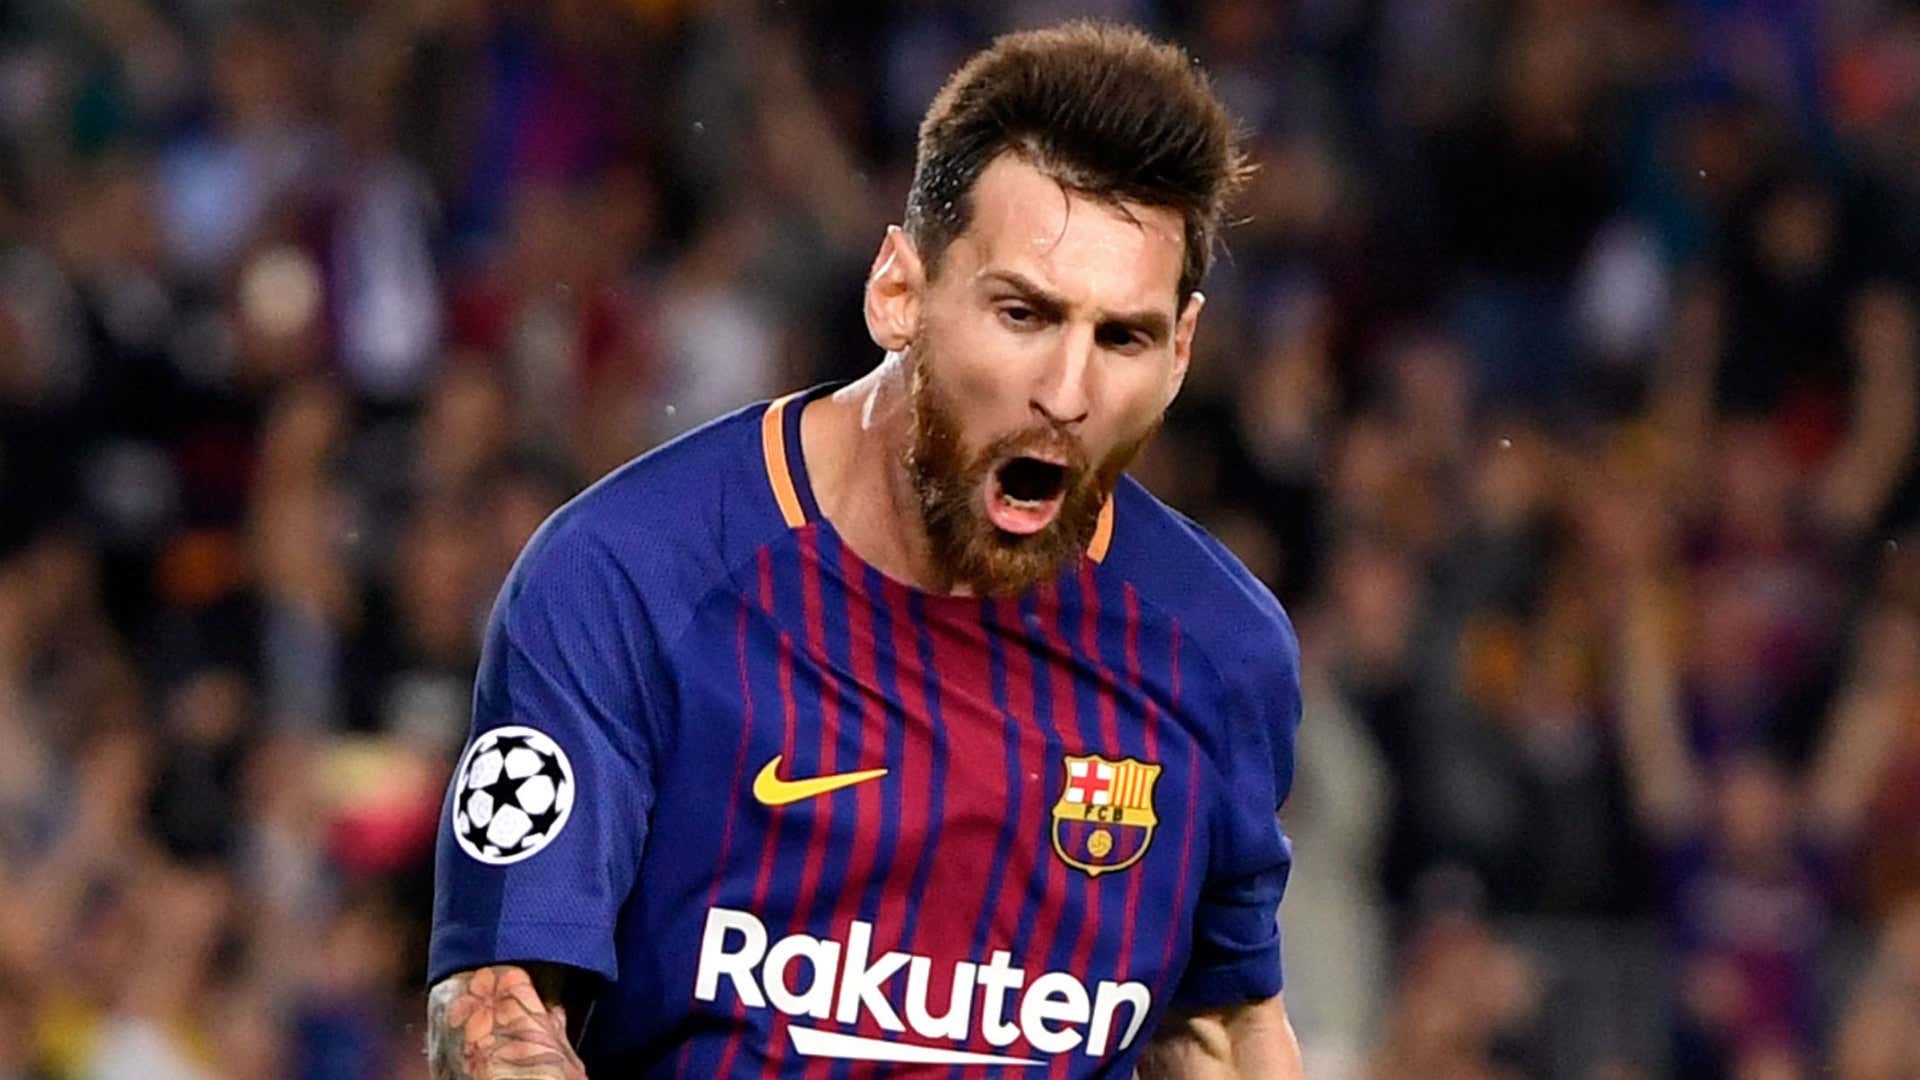 Ảnh Messi - Một huyền thoại bóng đá với kỹ thuật đỉnh cao, khả năng ghi bàn siêu phàm và những đường chuyền xuất sắc. Xem ảnh của anh là một trải nghiệm thú vị cho những tín đồ yêu thích bóng đá.